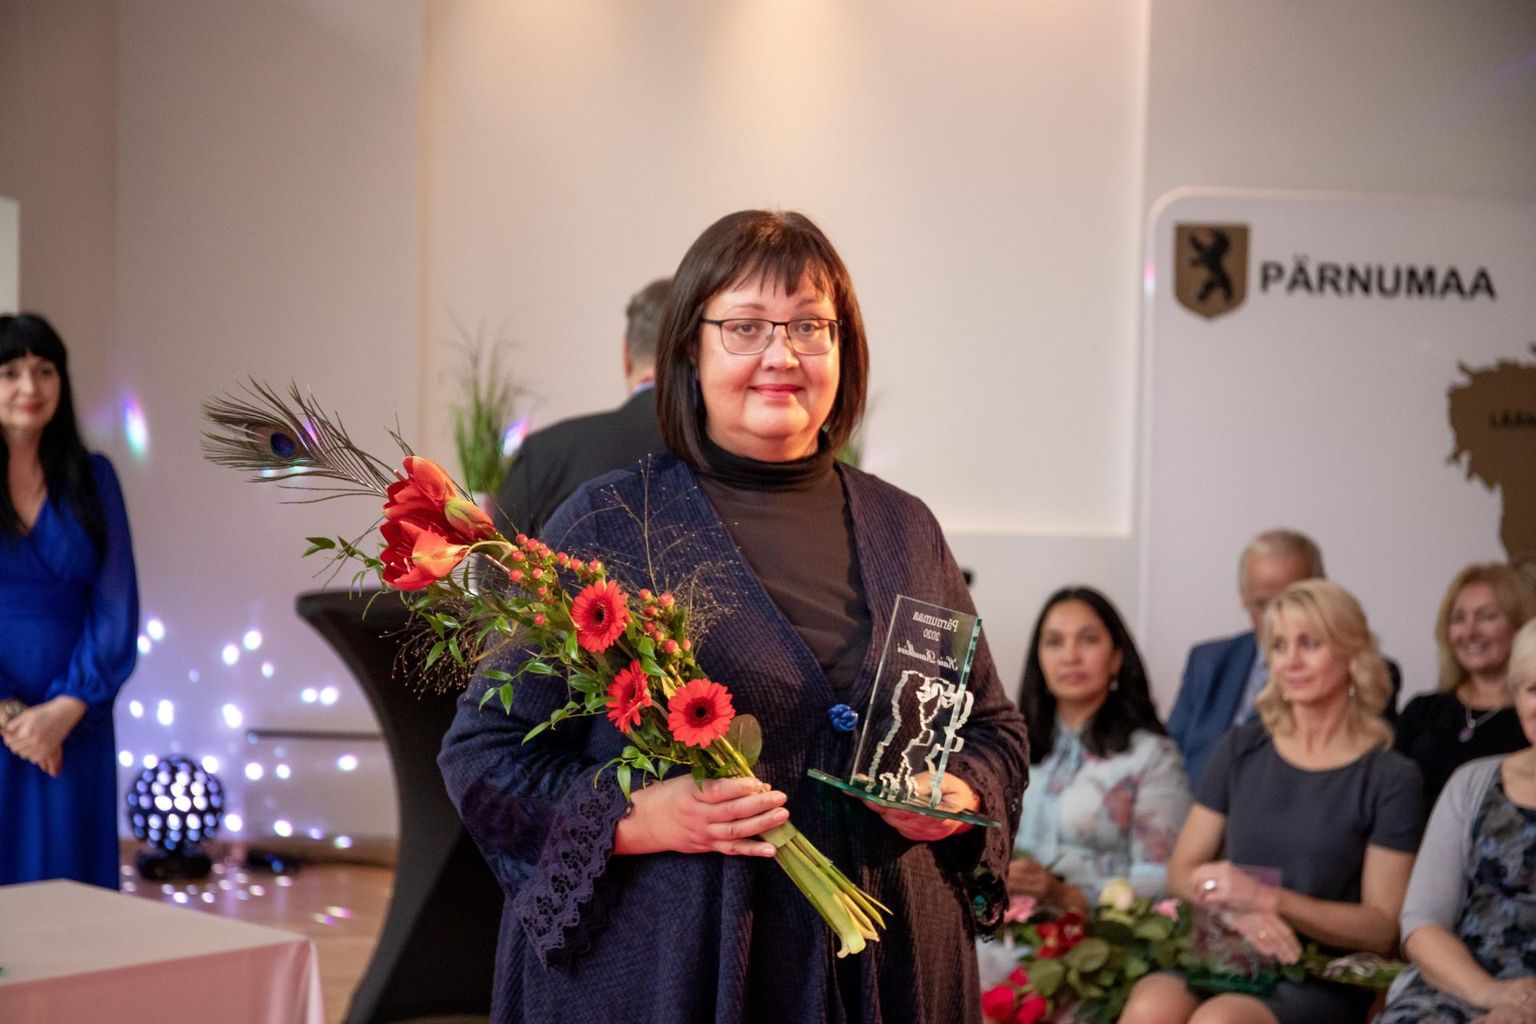 Год назад Кайе Раудкиви на розовой ковровой дорожке получила награду как лучшая воспитательница детского сада в Пярнумаа.